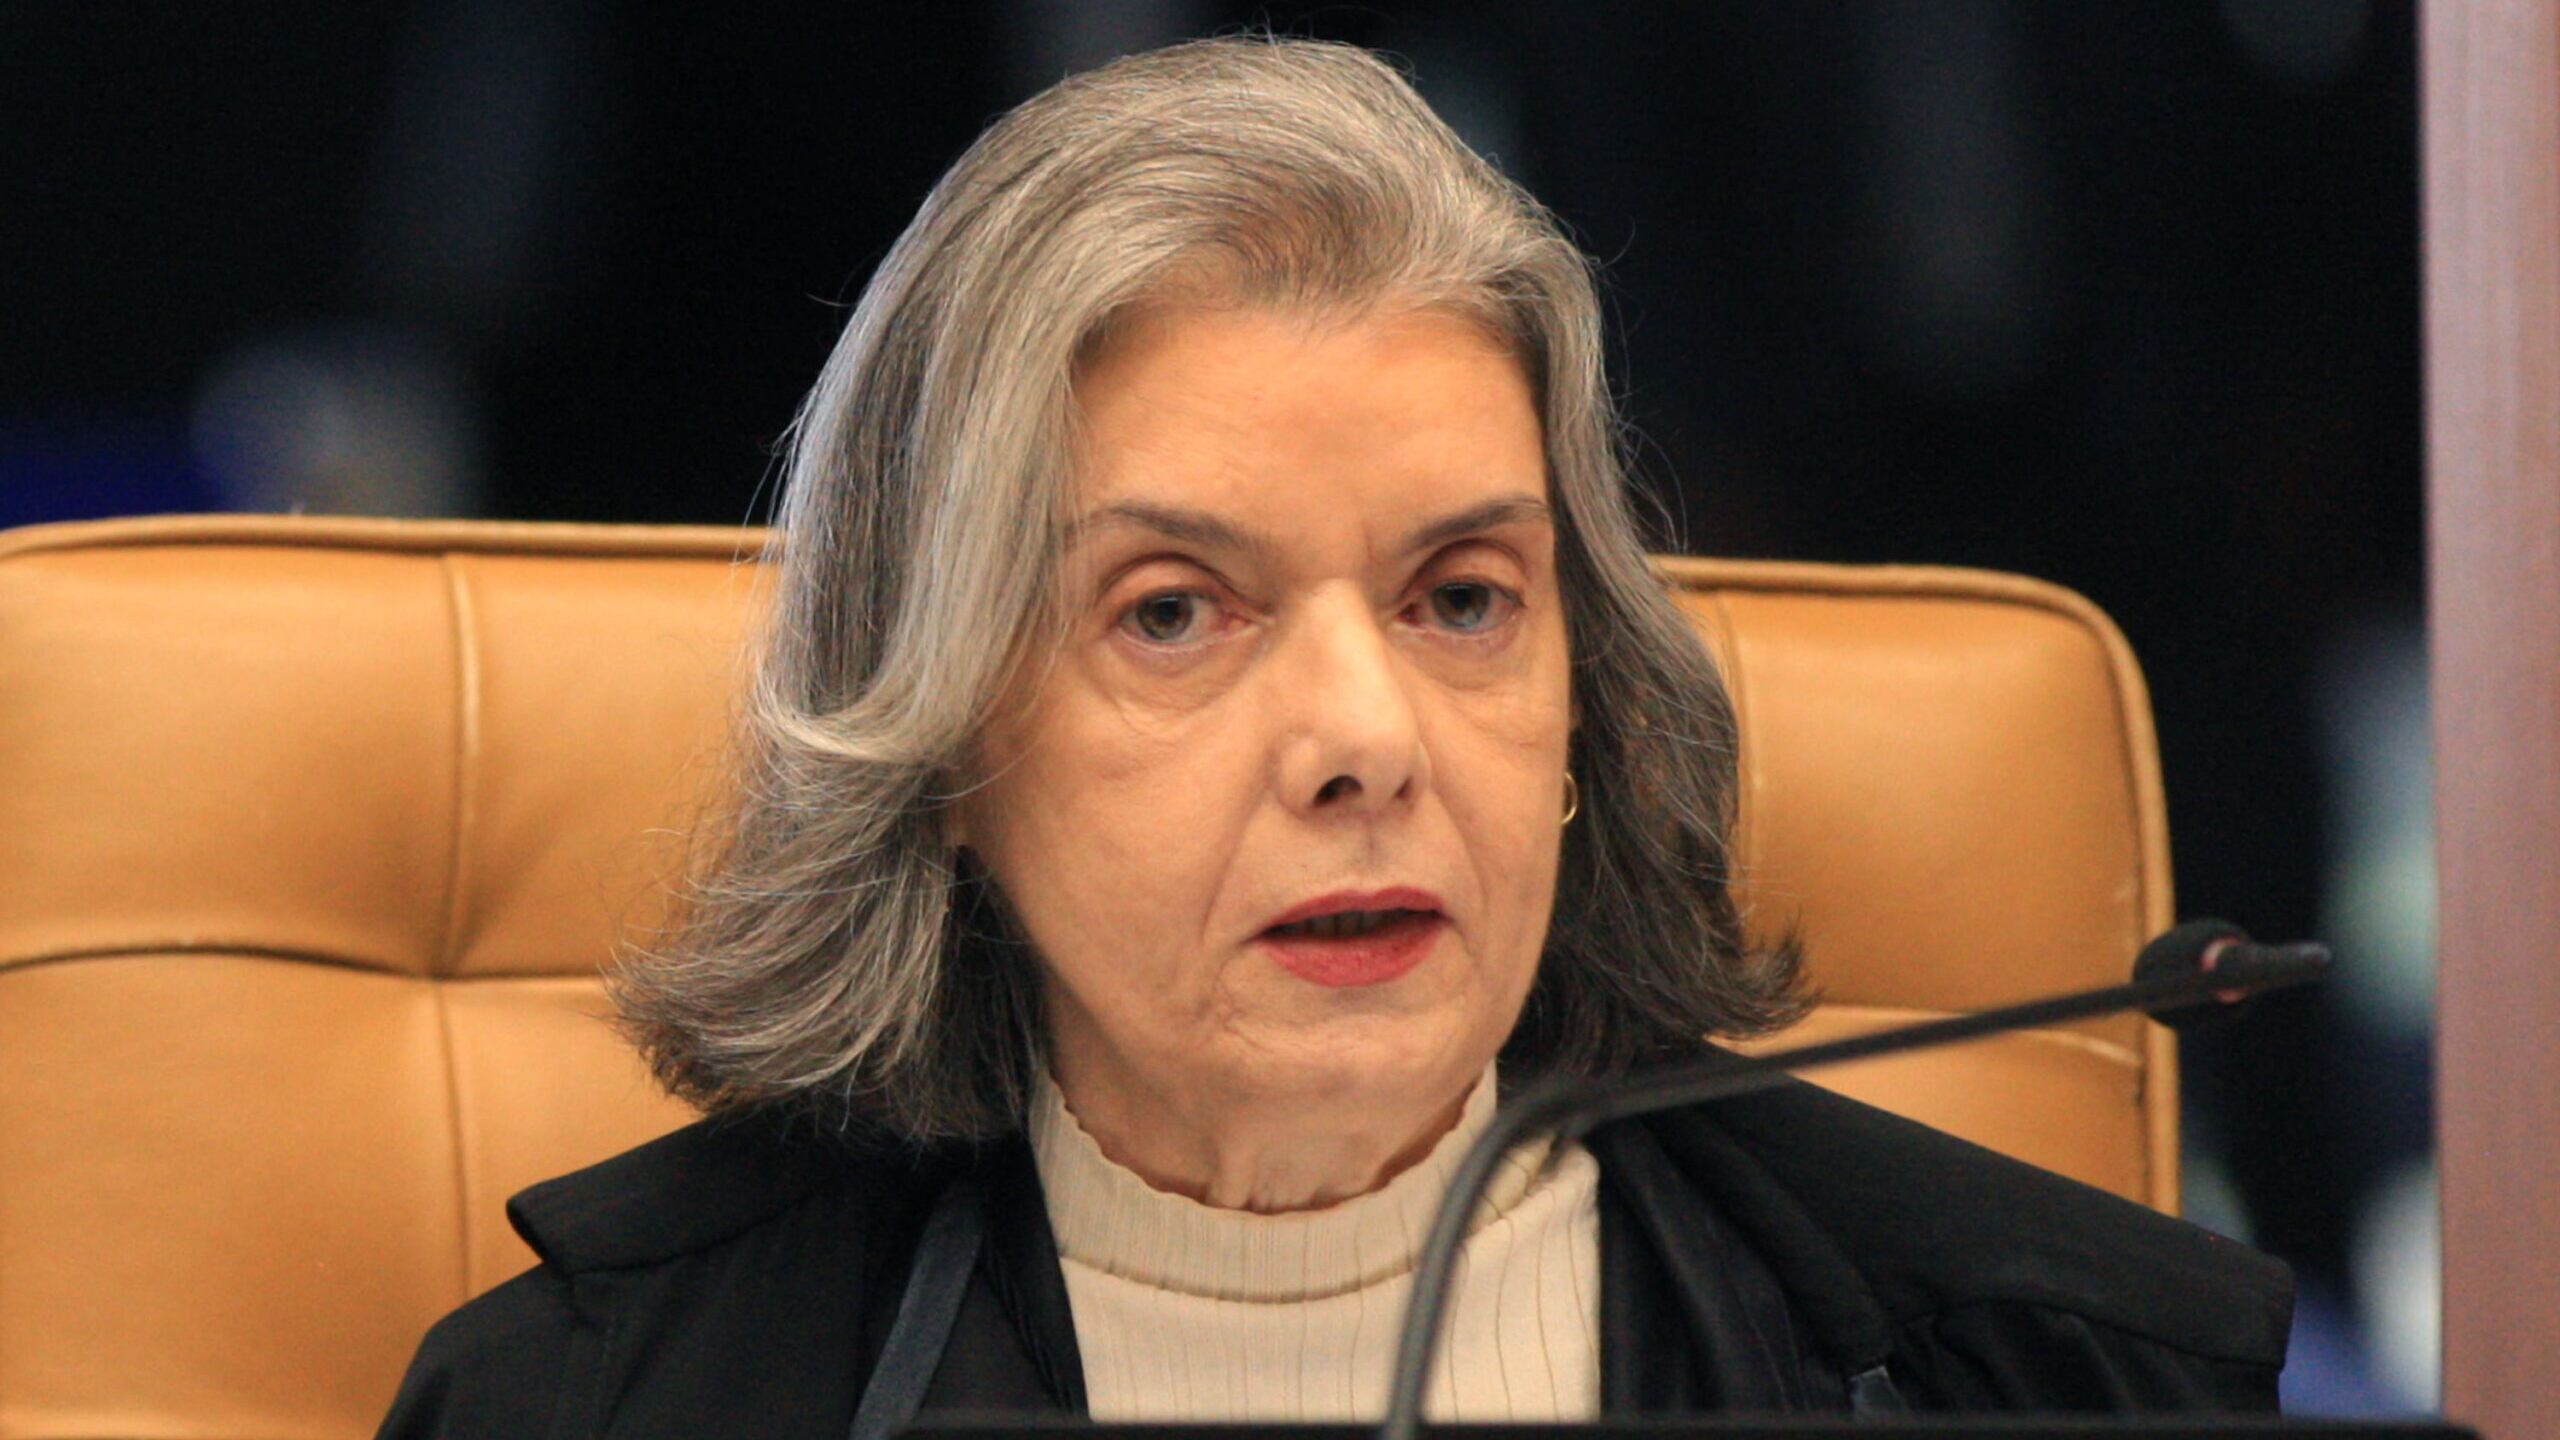 Ministra Cármen Lúcia votou favorável à descriminalização da maconha